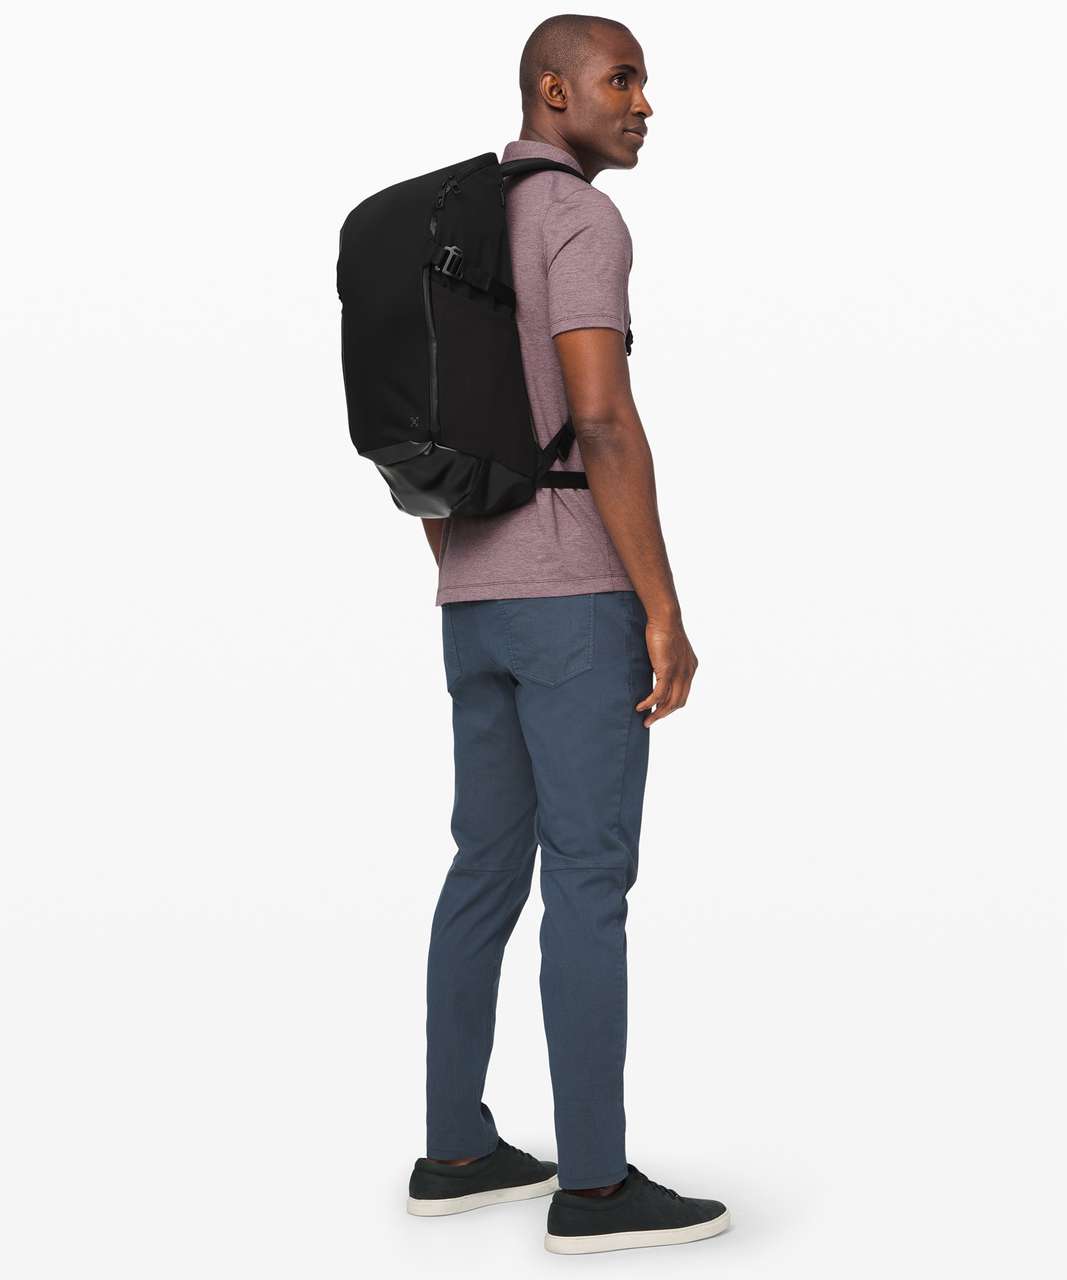 Lululemon More Miles Backpack *25.5L - Black